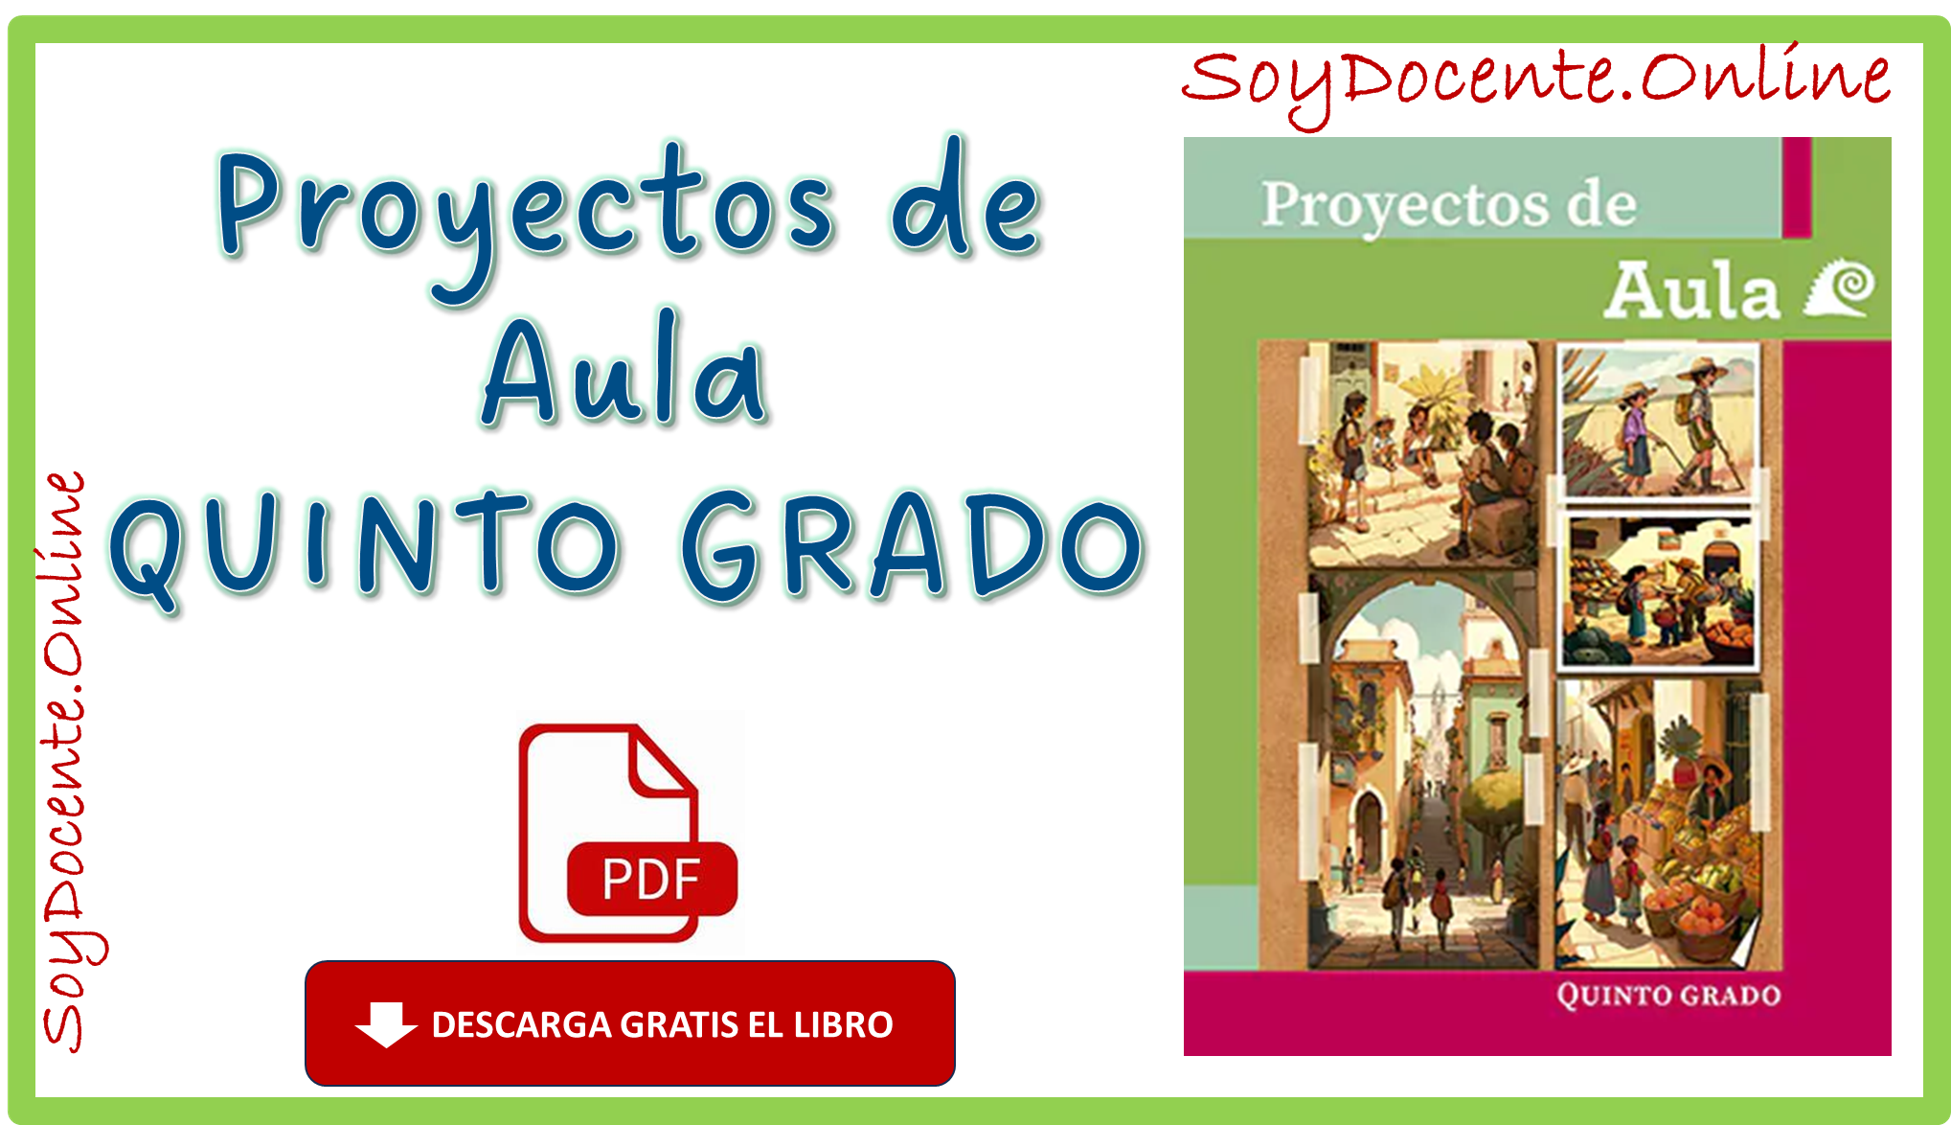 Descarga gratis en PDF el Libro de Proyectos de Aula quinto grado de Primaria obra oficial de la SEP, distribuido por CONALITEG.